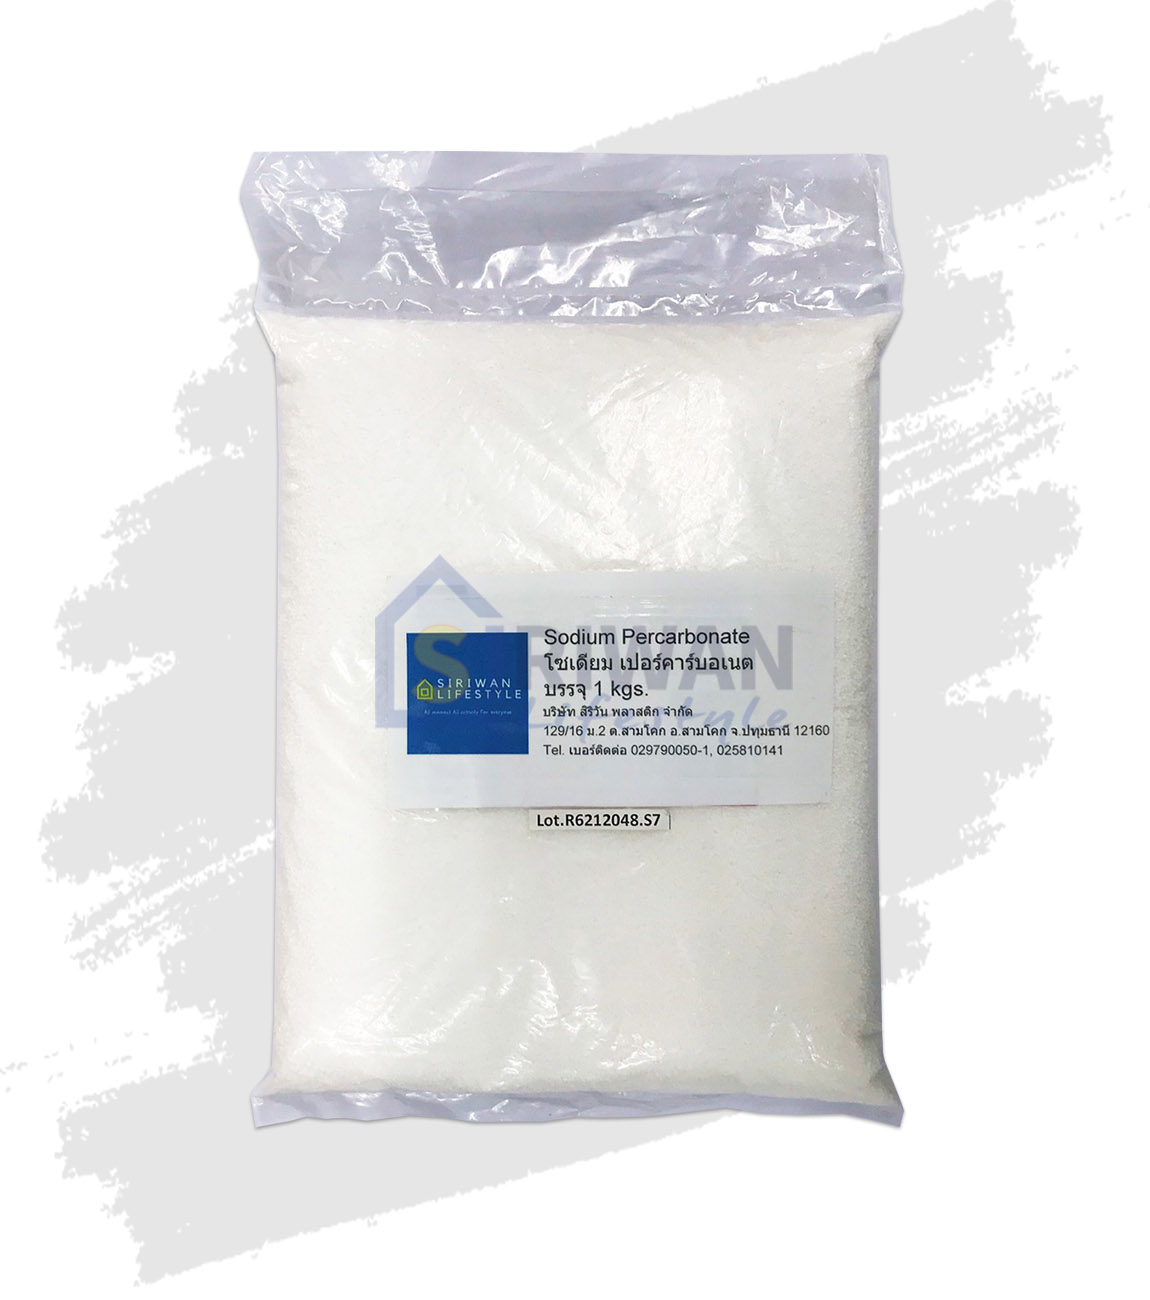 โซเดียม เปอร์คาร์บอเนต  (Sodium Percarbonate) ผงฟอกผ้าขาว 1000 กรัม รหัส 4800